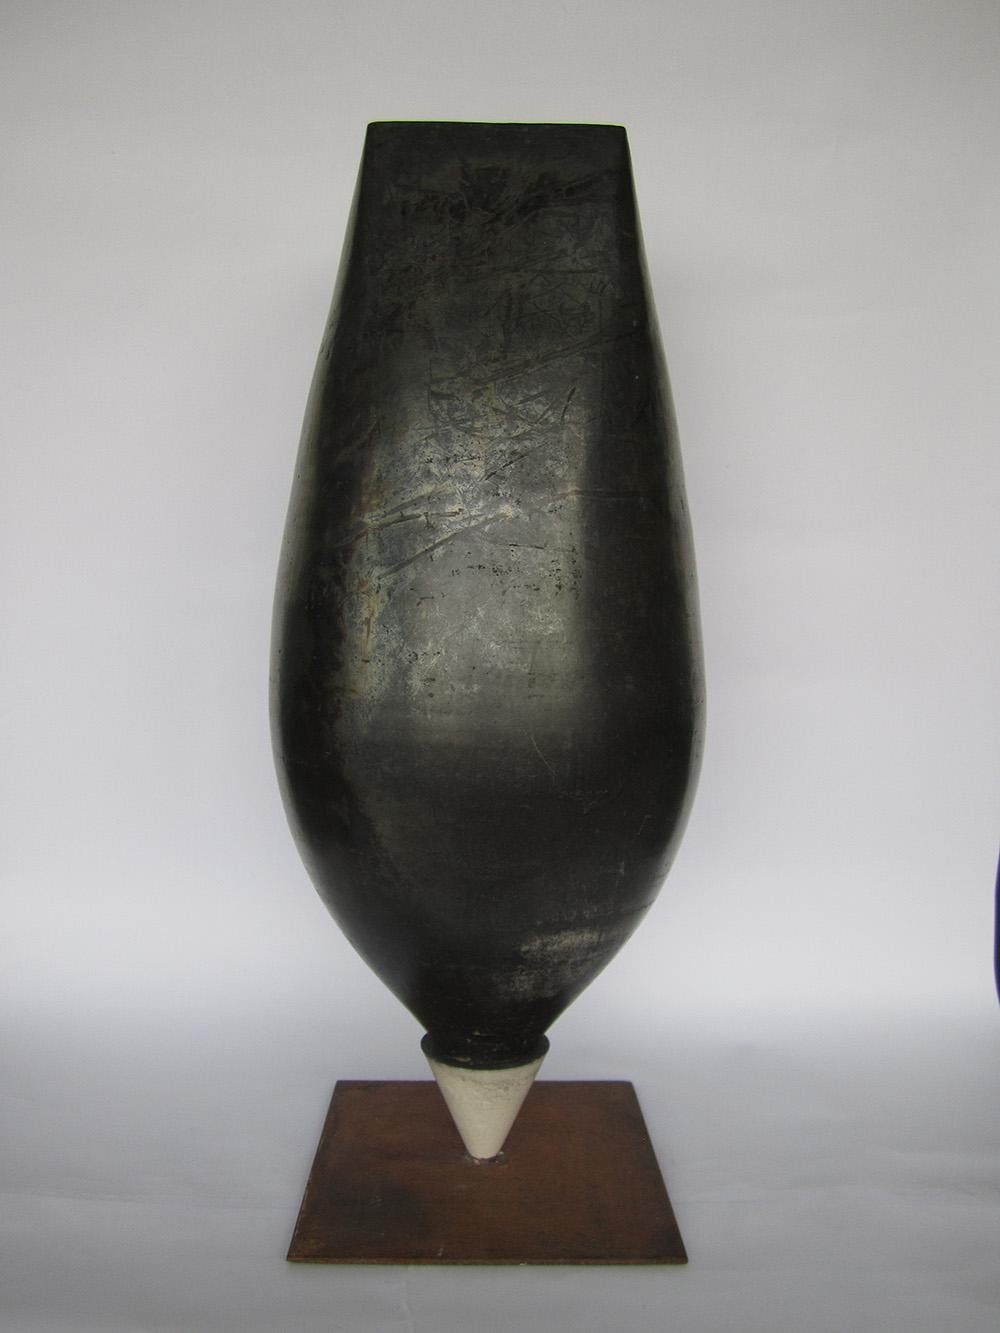 Spinning-top ist eine einzigartige Keramikskulptur des zeitgenössischen Künstlers Tien Wen, dessen Werk um die Idee der Abstraktion und die Reinheit der Formen kreist. 57 cm × 24 cm × 24 cm.
Dank der Raku-Technik, die dem Künstler sehr am Herzen